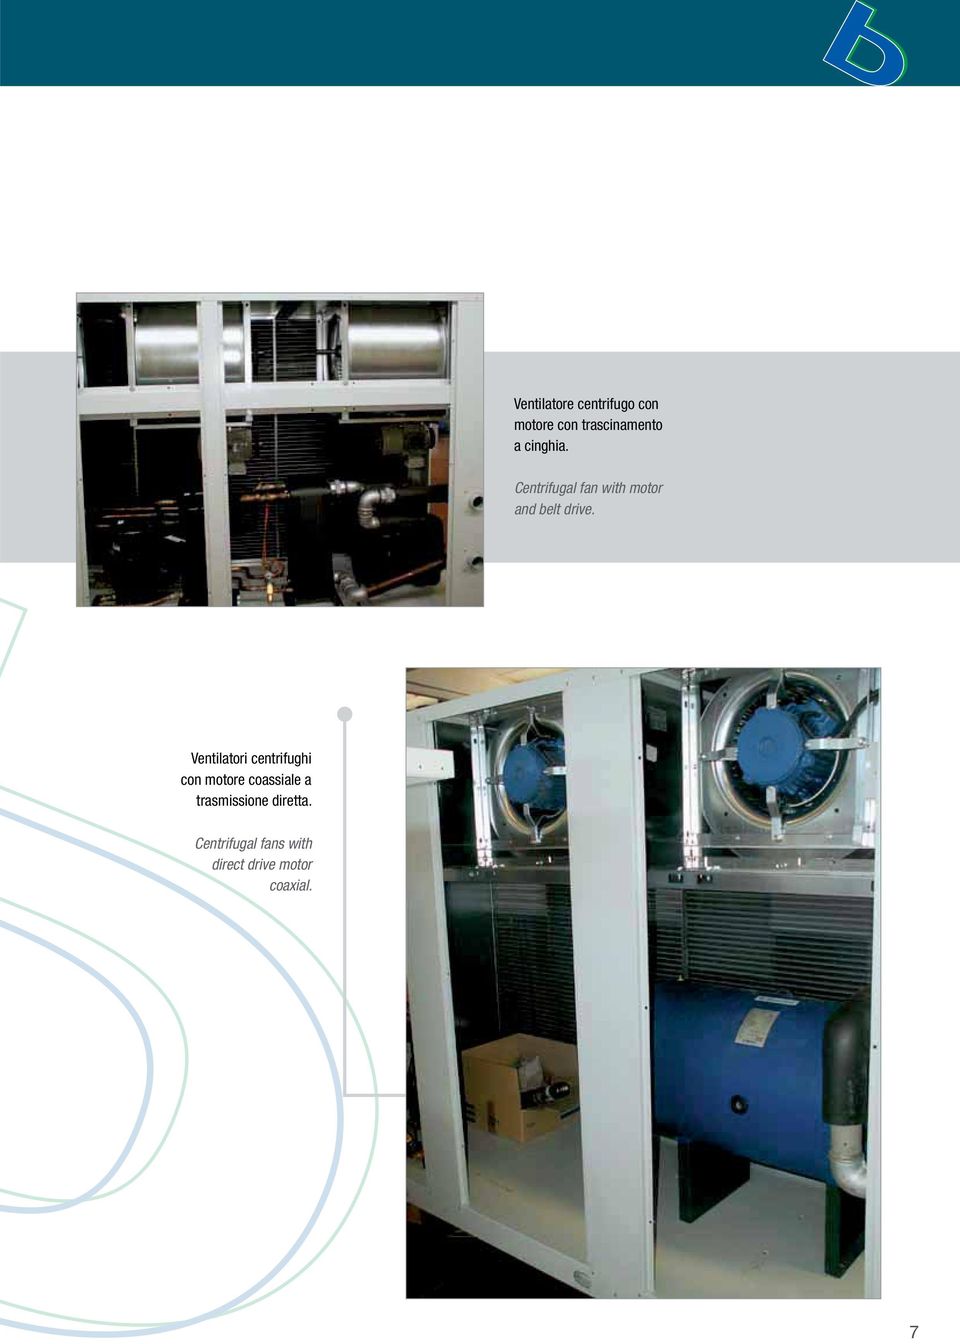 Ventilatori centrifughi con motore coassiale a